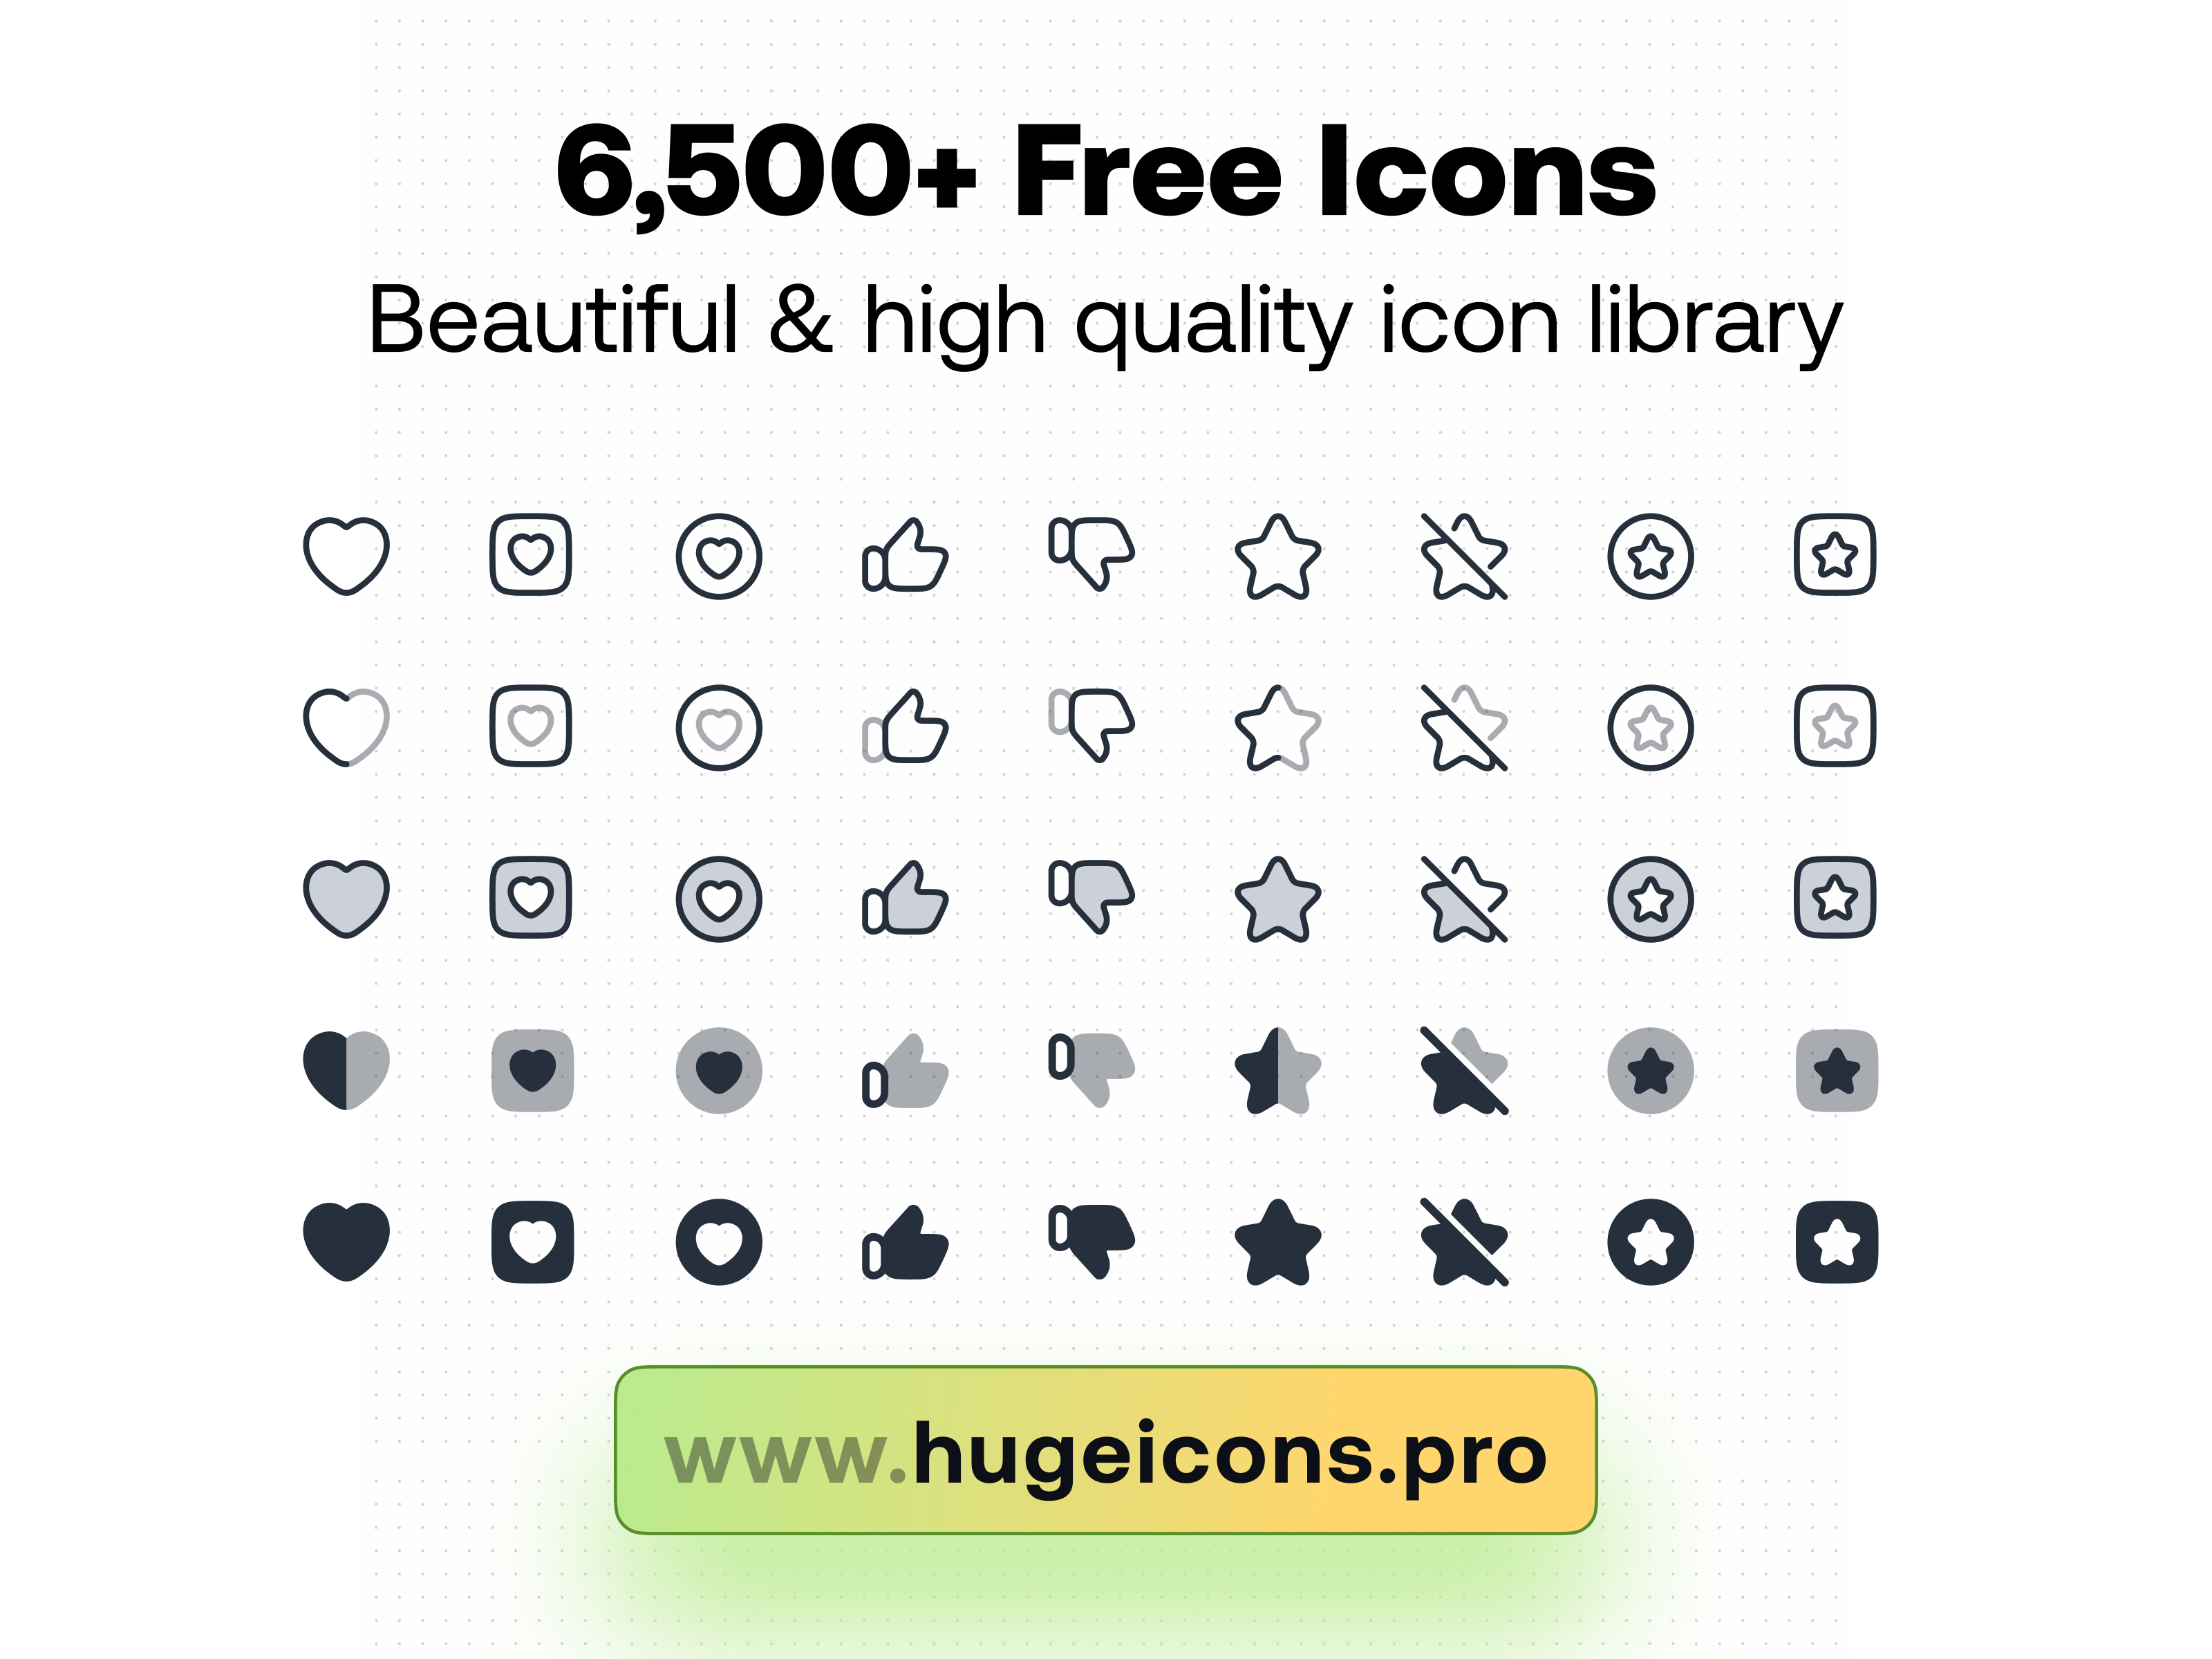 GitHub - lpgdasilva/Google-Material-Icons-for-Sketch: Google Material Icons  Library for Sketch App